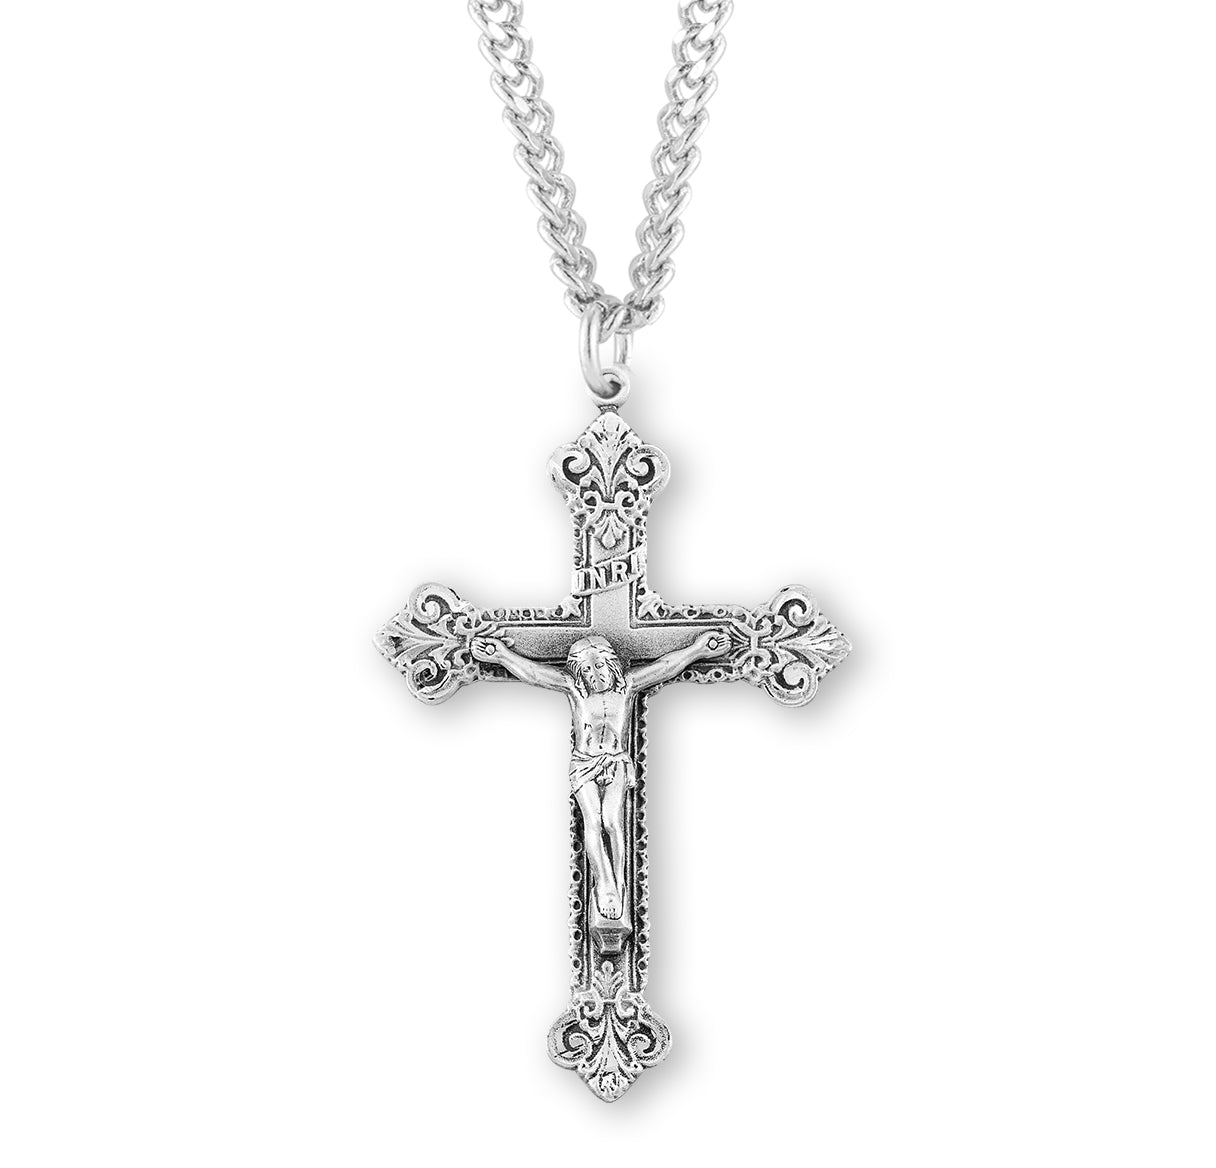 Scroll Design Sterling Silver Crucifix